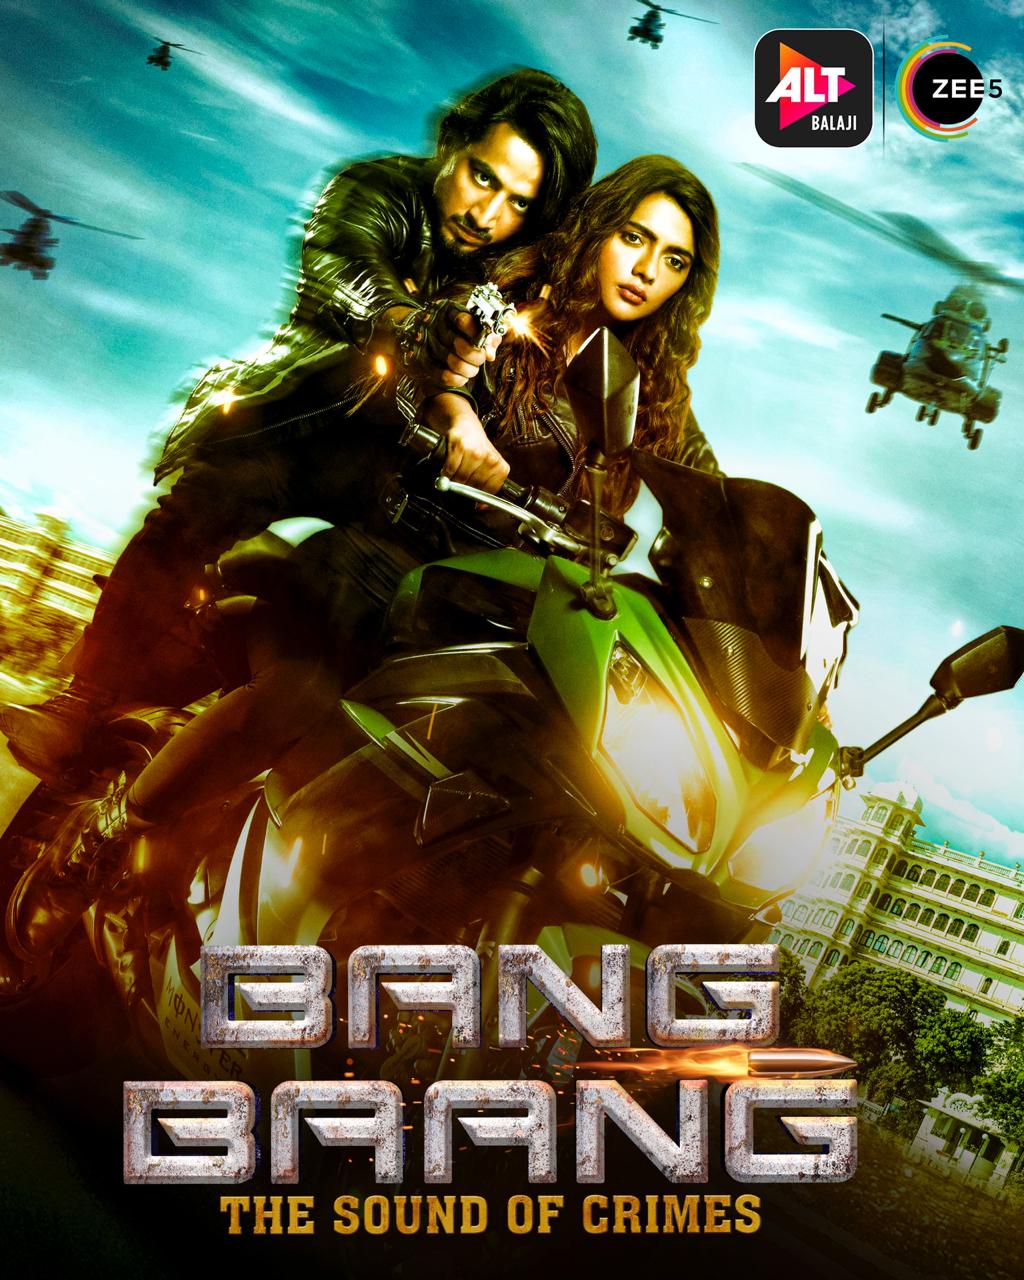 ekta kapoor web series - Bang Baang